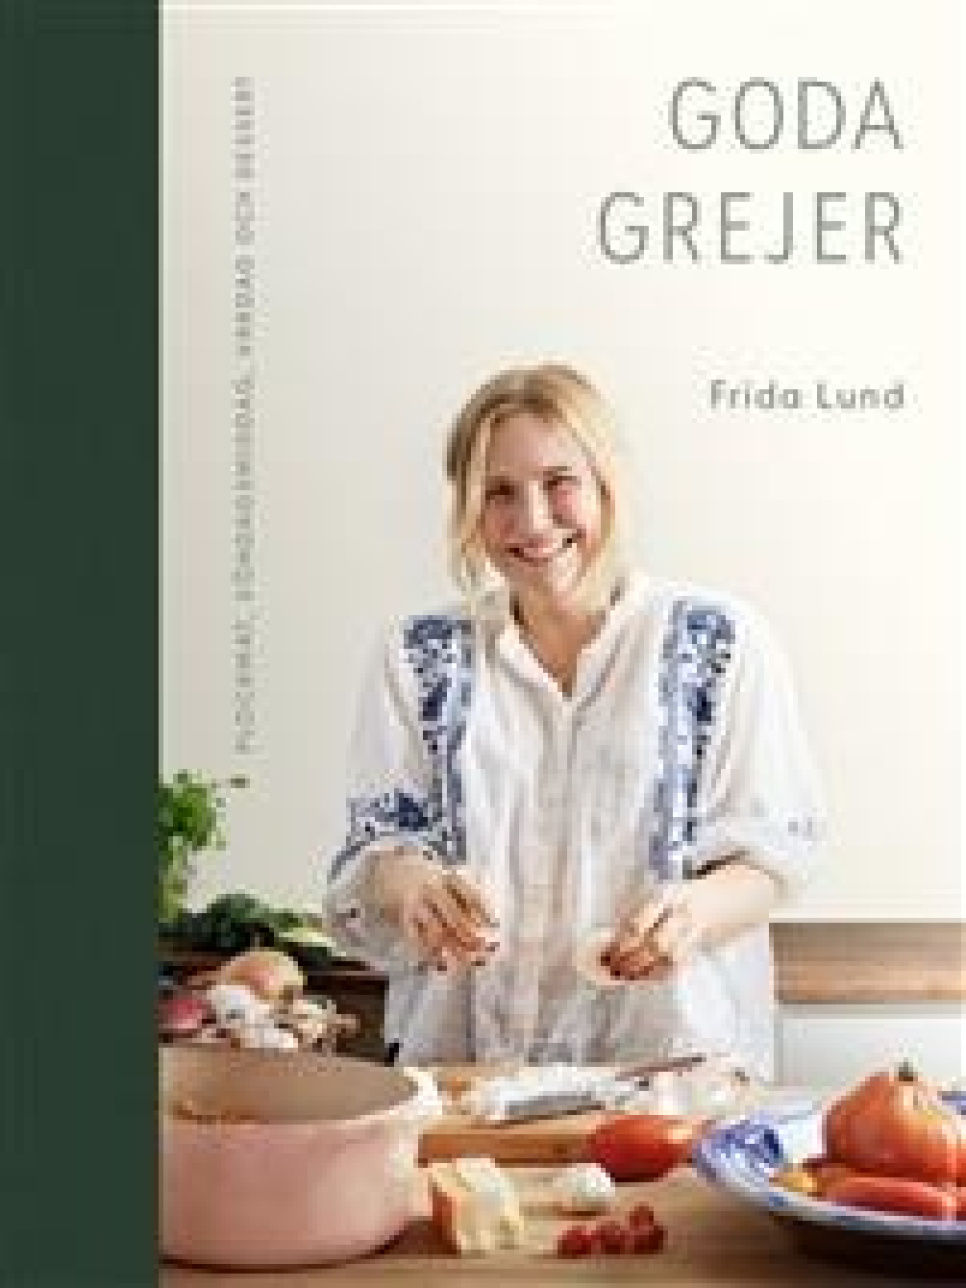 Goda grejer - Frida Lund i gruppen Matlagning / Kokböcker / Kändiskockar & TV-program hos KitchenLab (1355-23507)